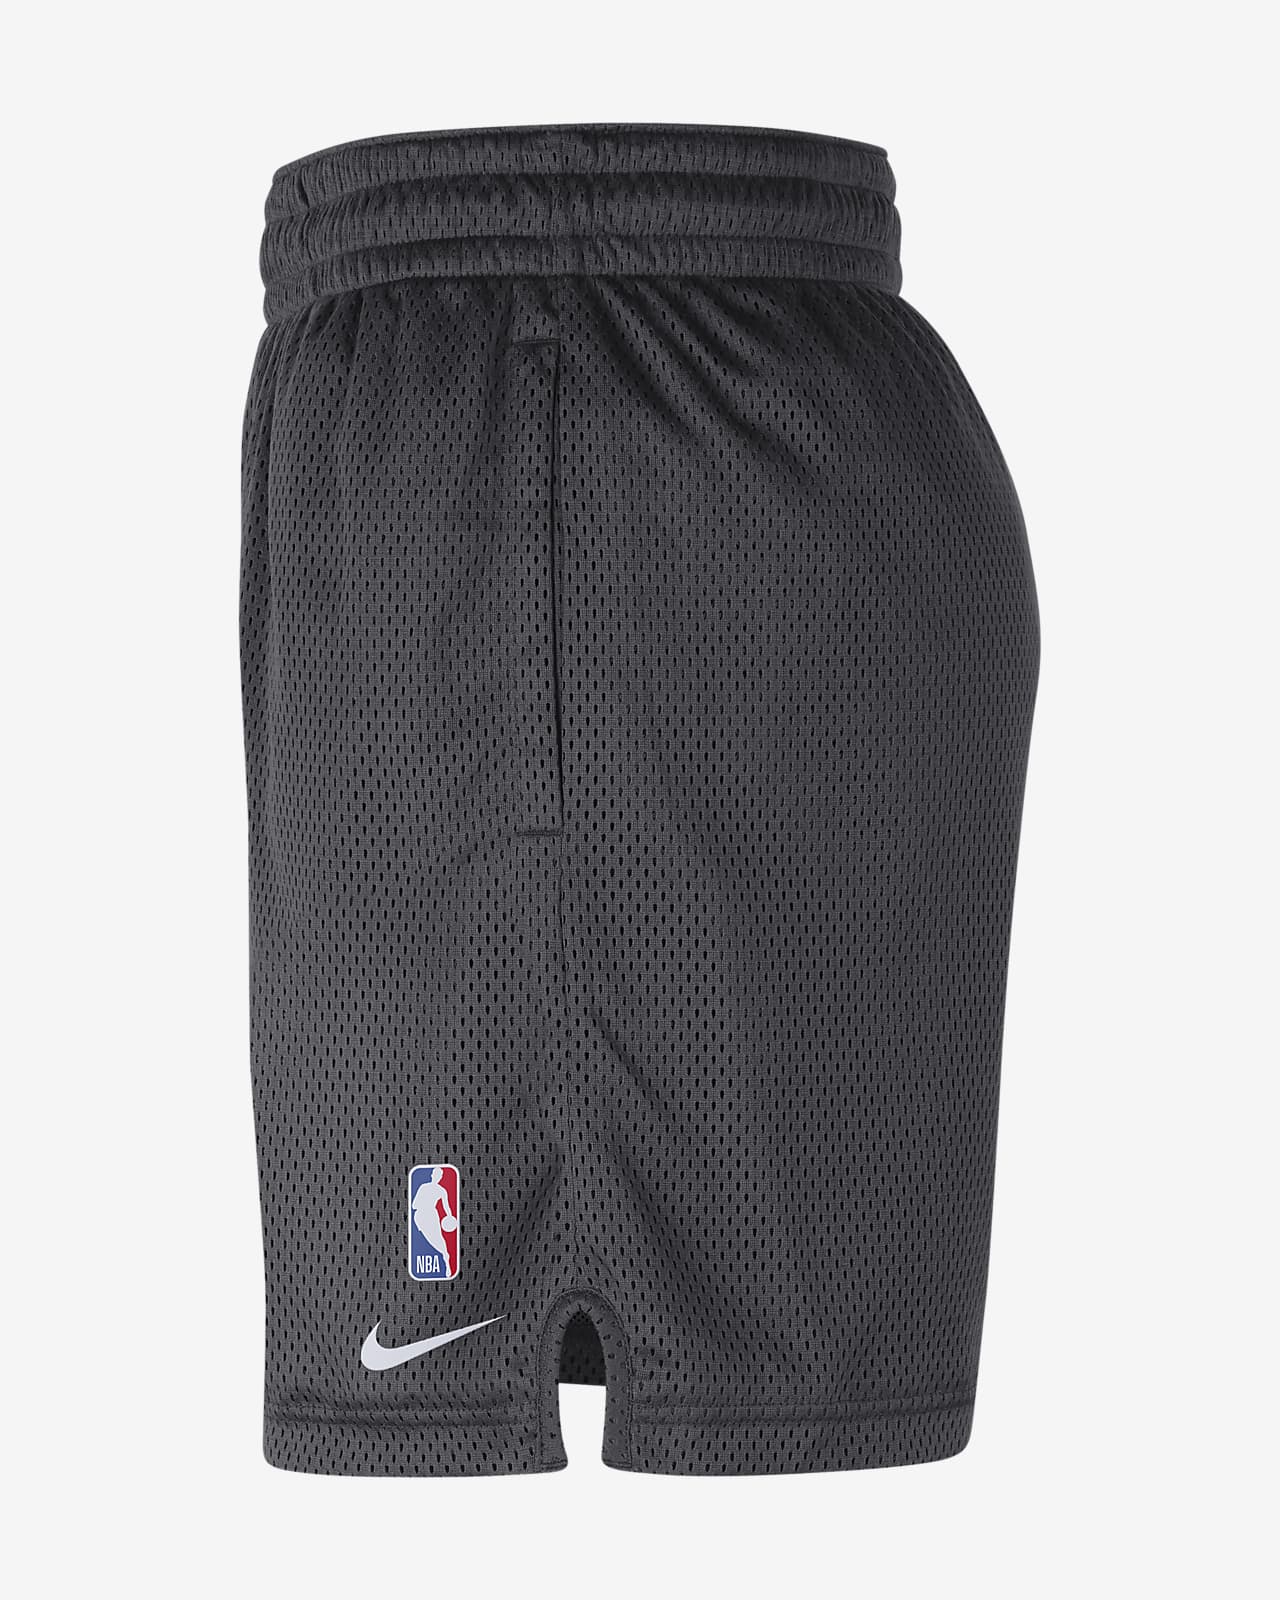 brooklyn nets shorts grey